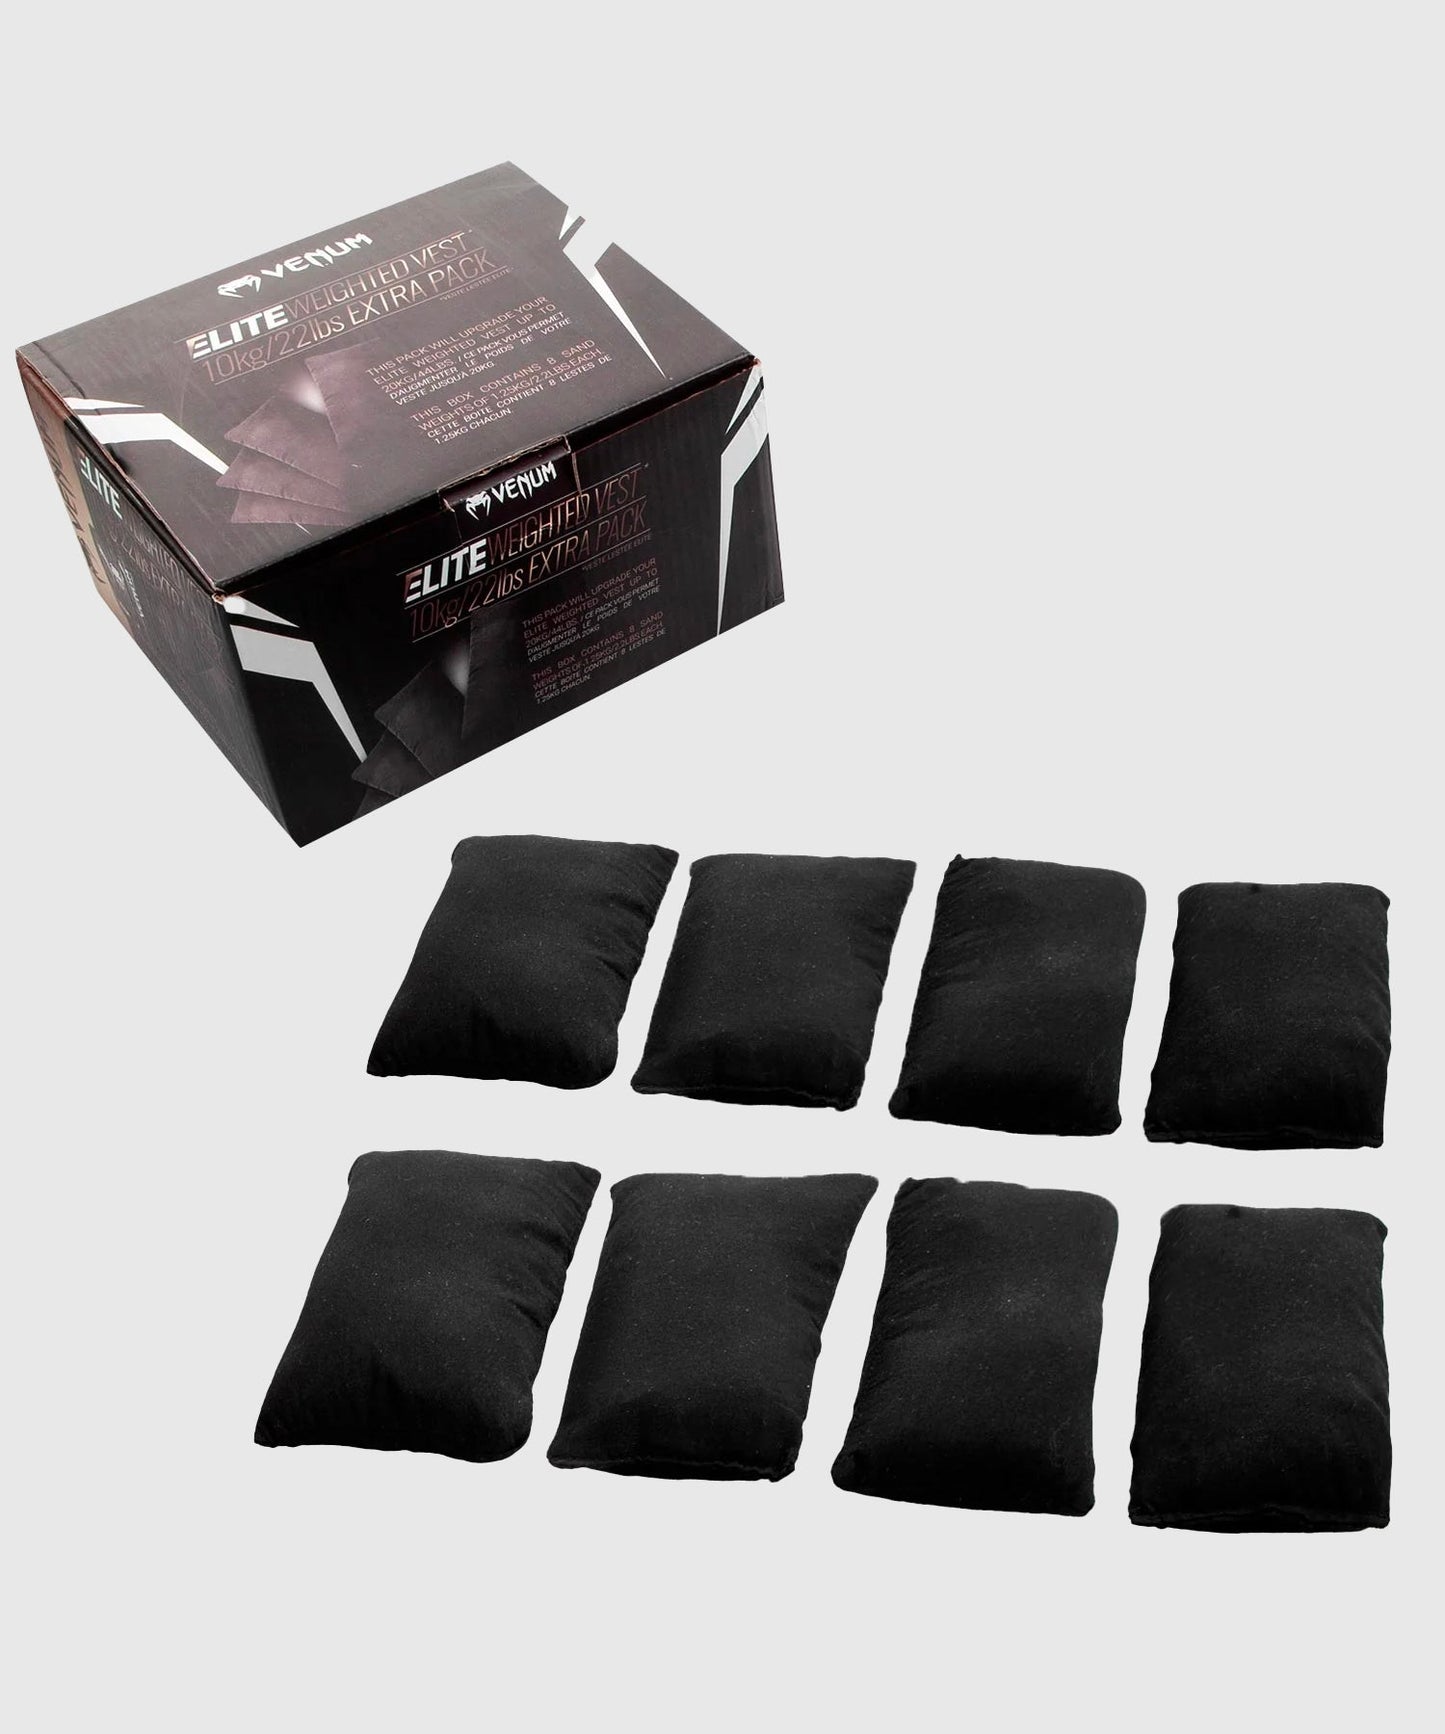 Venum Elite Extra Pack - Extra gewichten voor vest met gewichten - 10 kilo